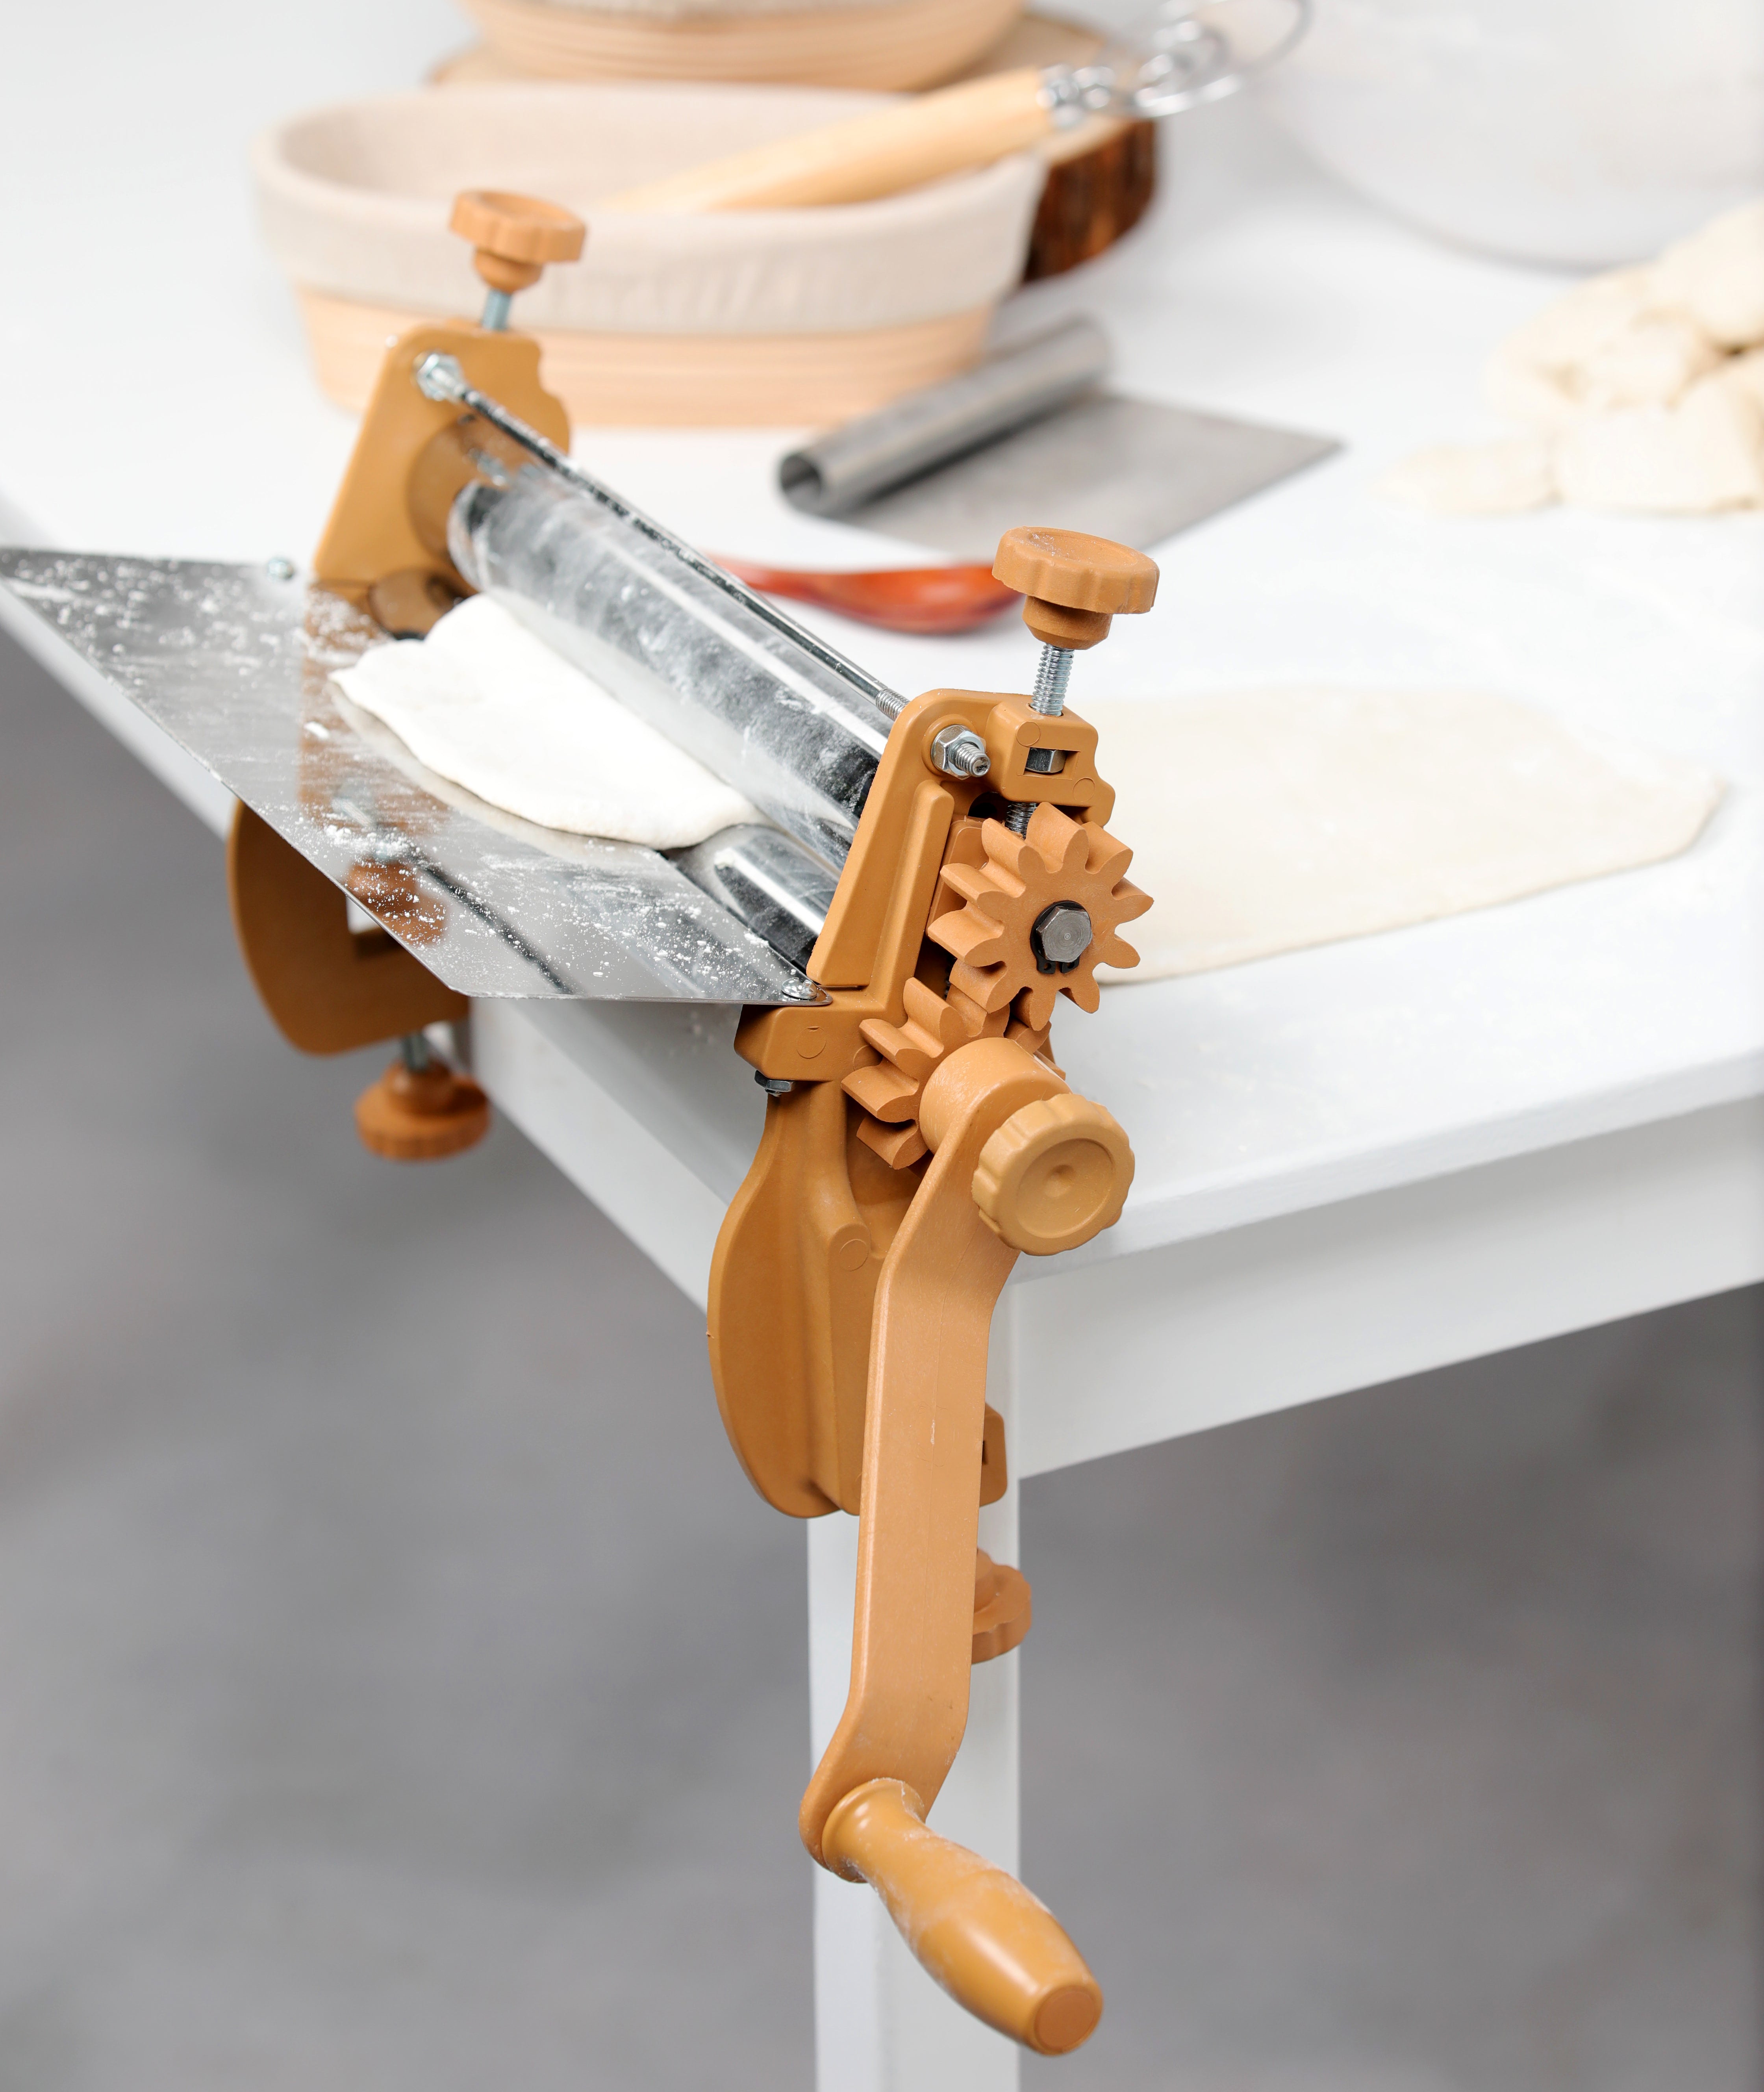 Manual Dough Sheeter, Manual Dough Roller, Dough Sheeter for Home, Pastry  Sheeter, Dough Roller, Pasta Machine, Sheet Roller Doughsheeter 